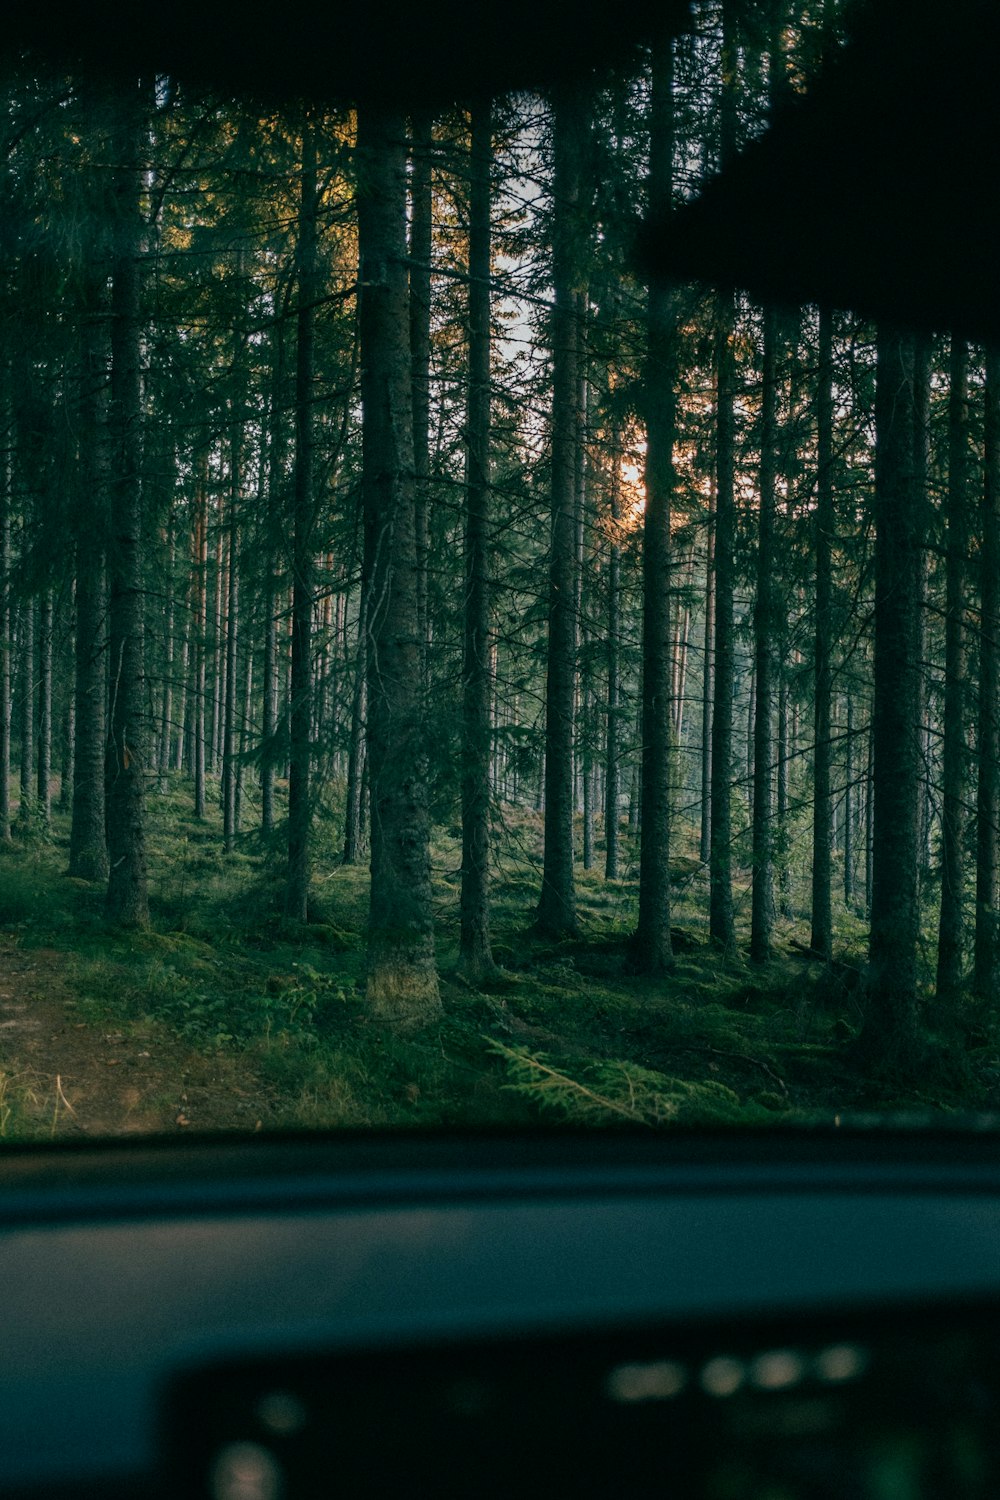 Une voiture traversant une forêt remplie de grands arbres